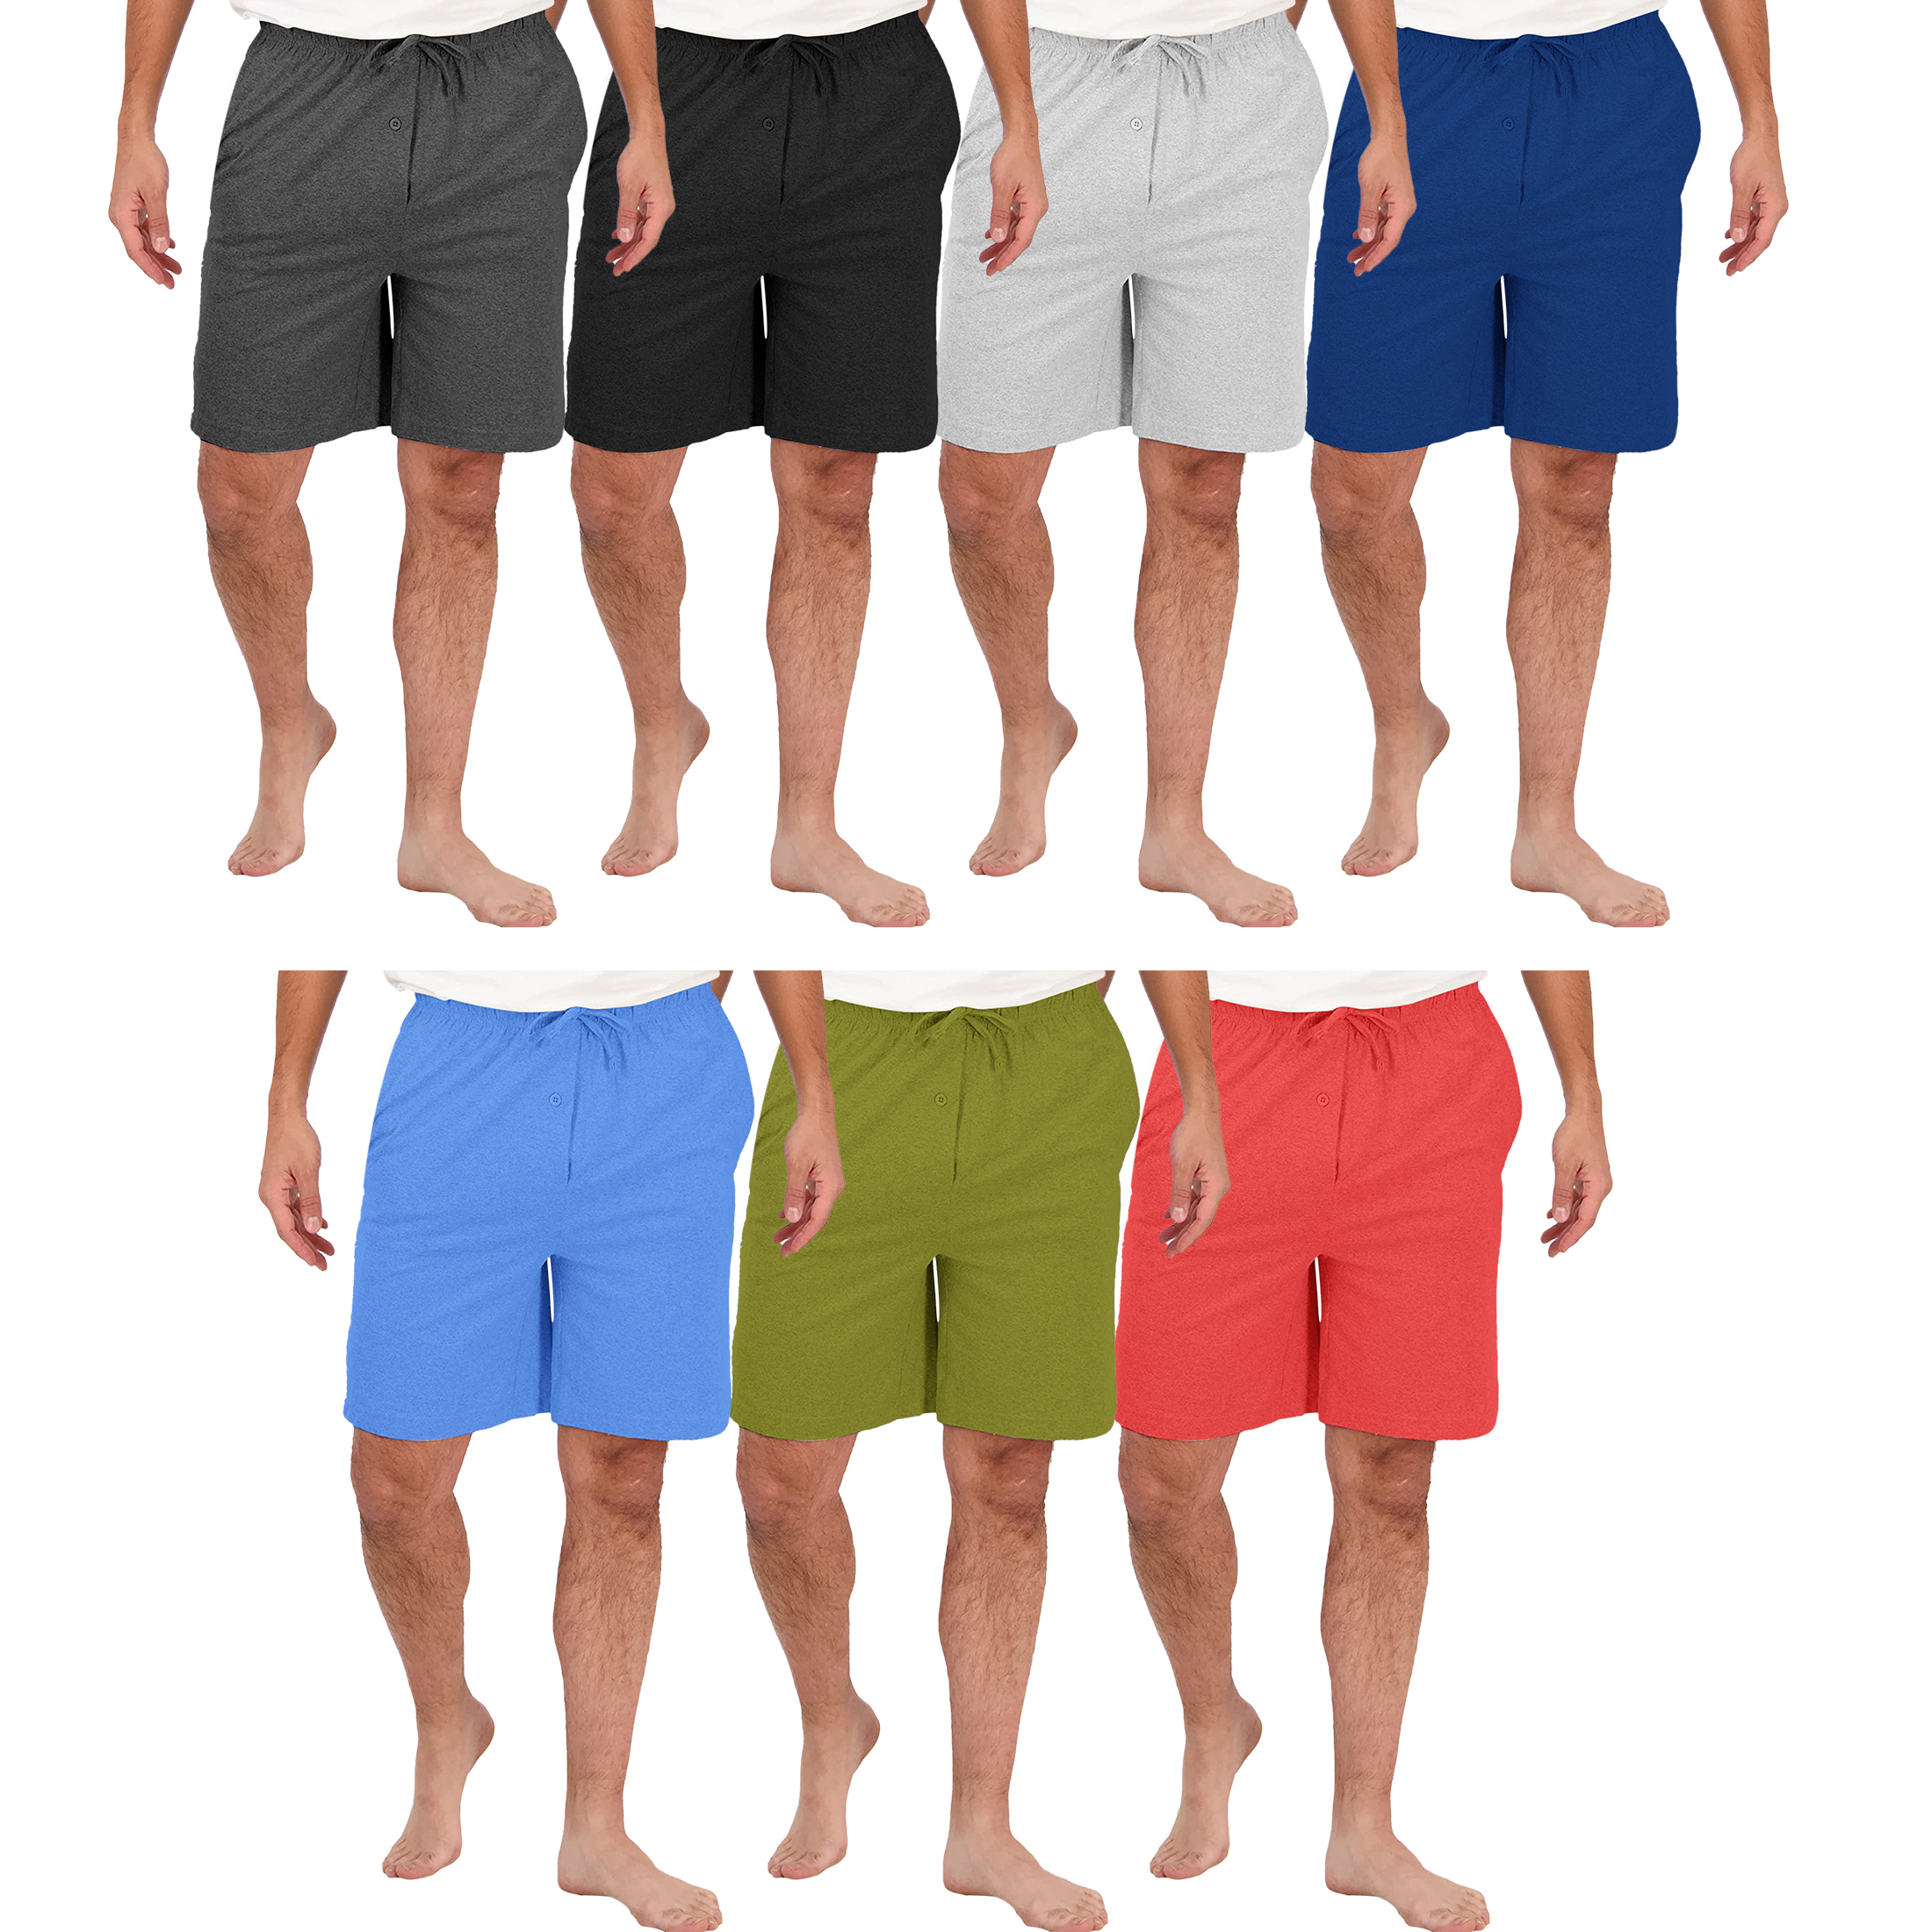 2-Pack: Men's Soft Solid Elastic Waistband Sleep Lounge Pajama Shorts - Large